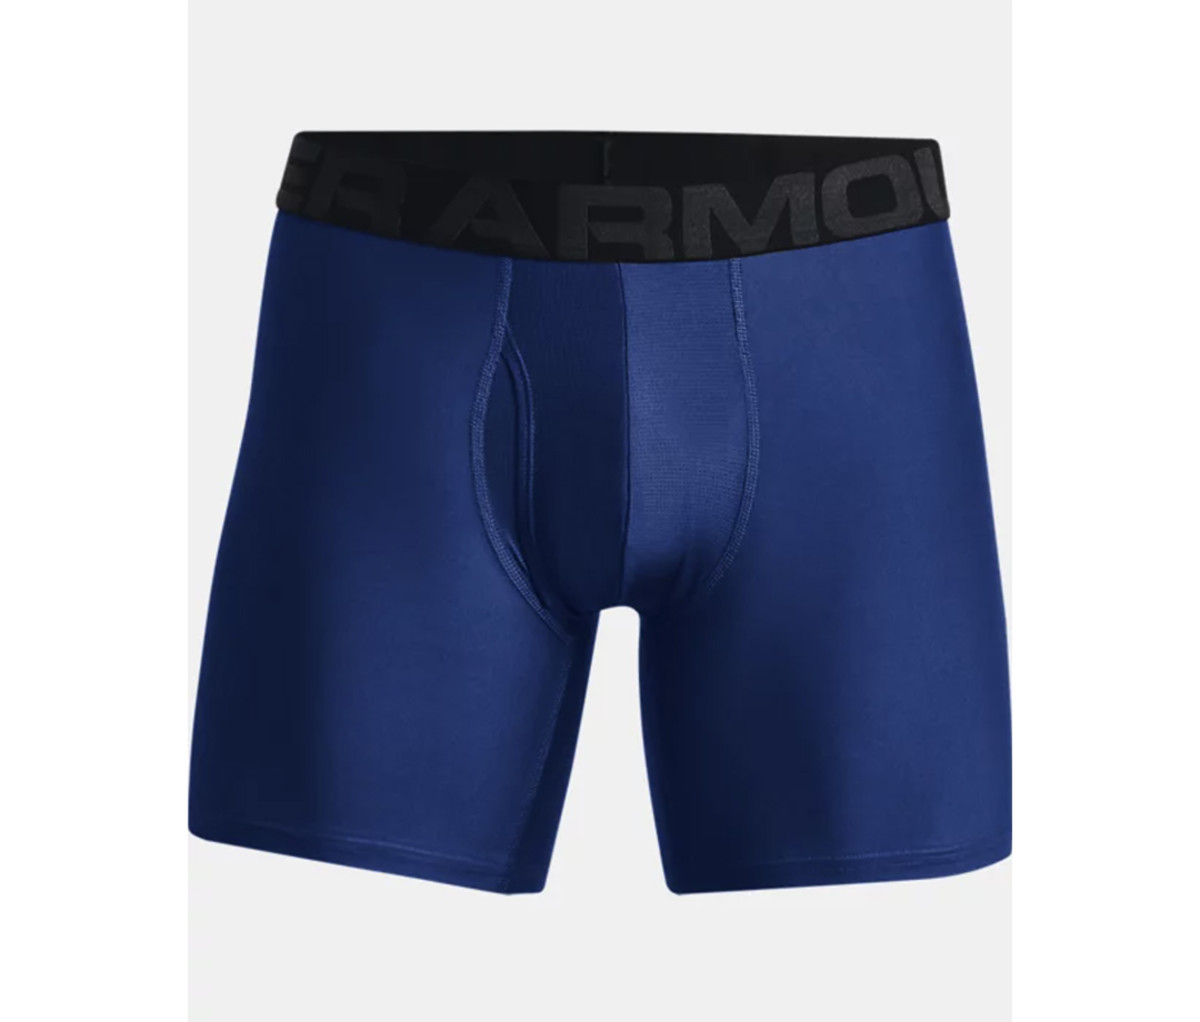 Under Armour Tech 6 Inch Men's Boxer Brief, Underwear, Moisture